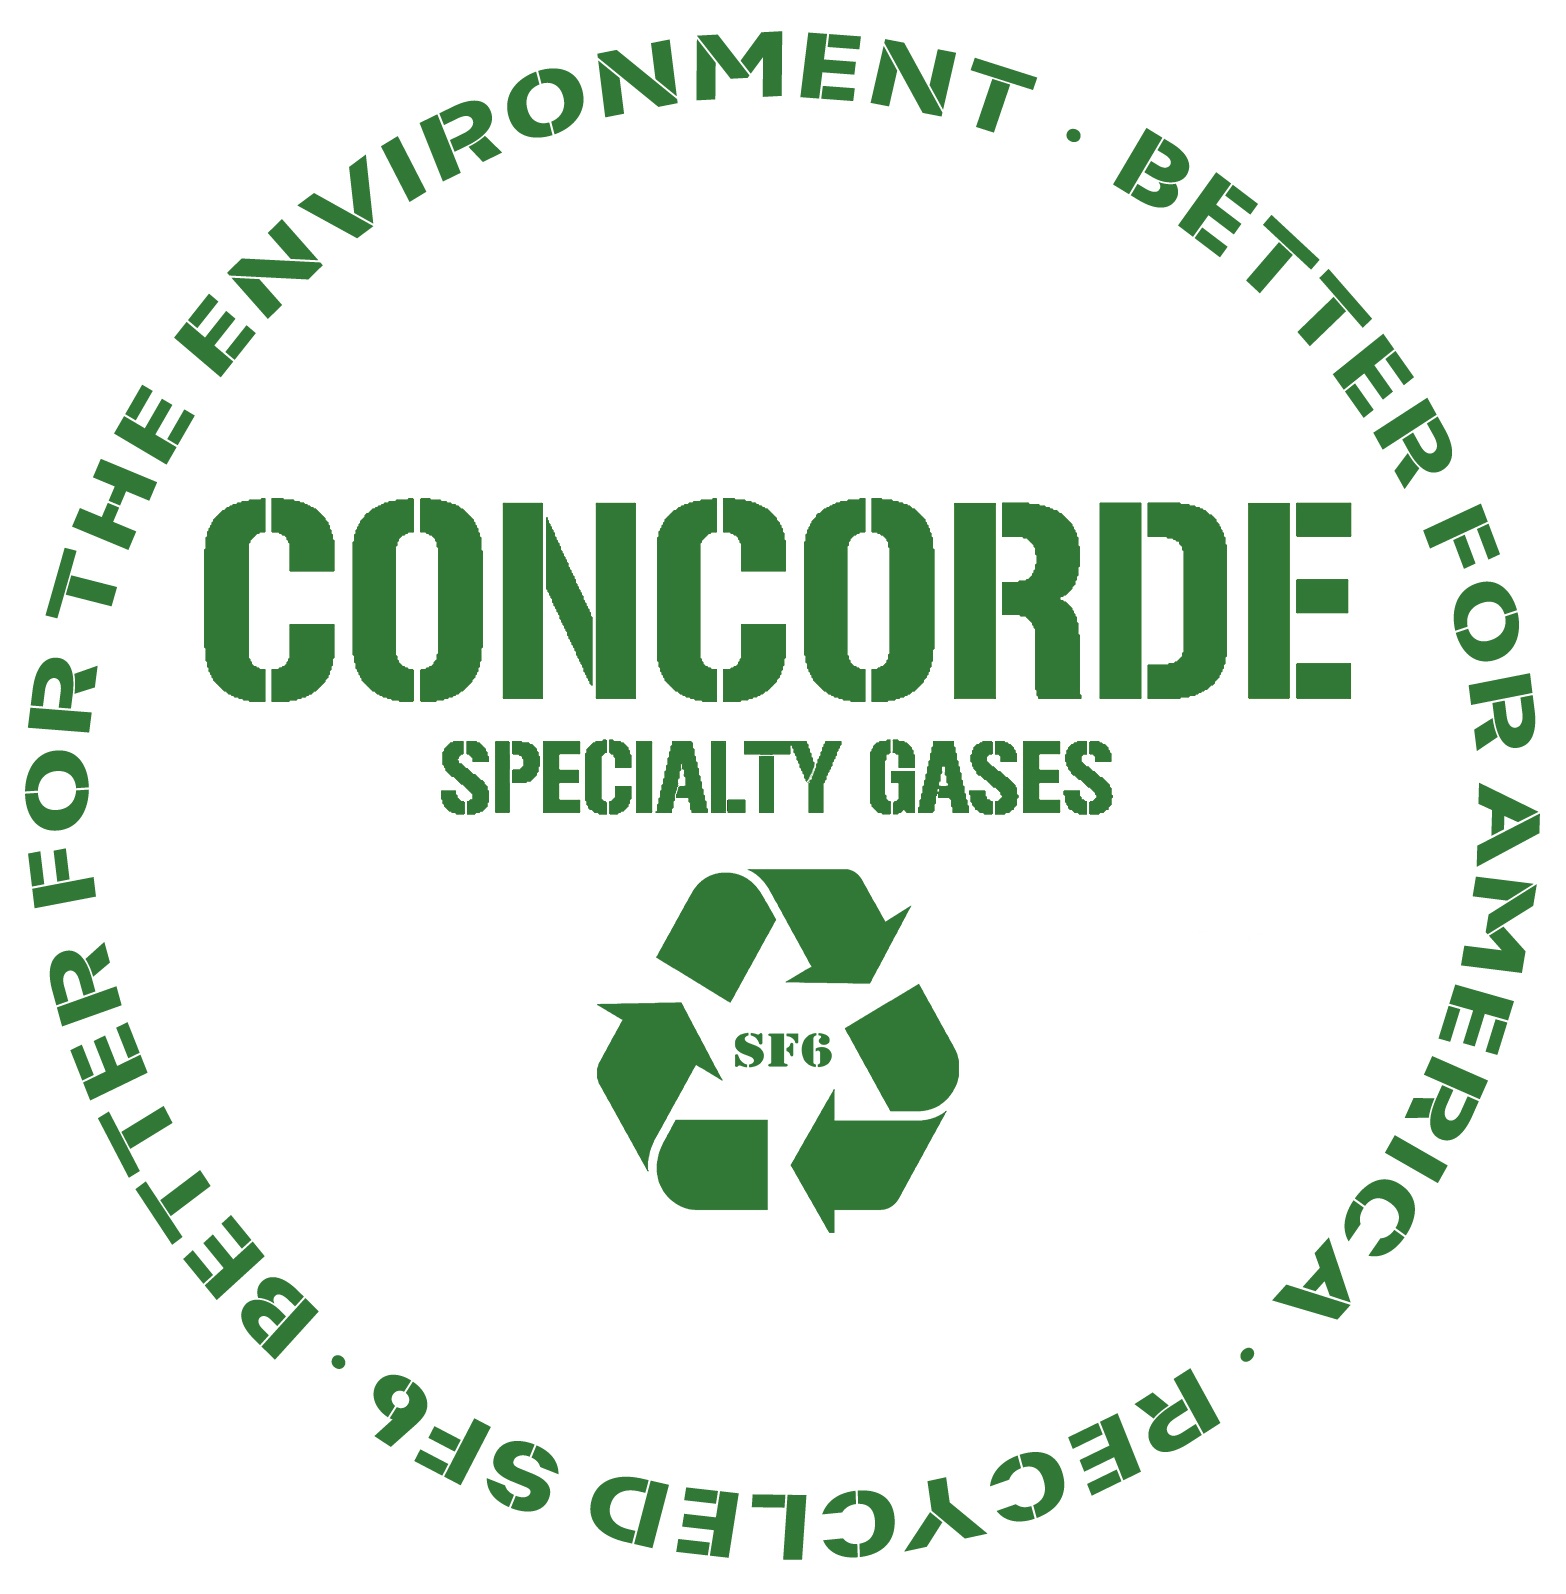 recycle sf6 gas logo via concorde specialty gases